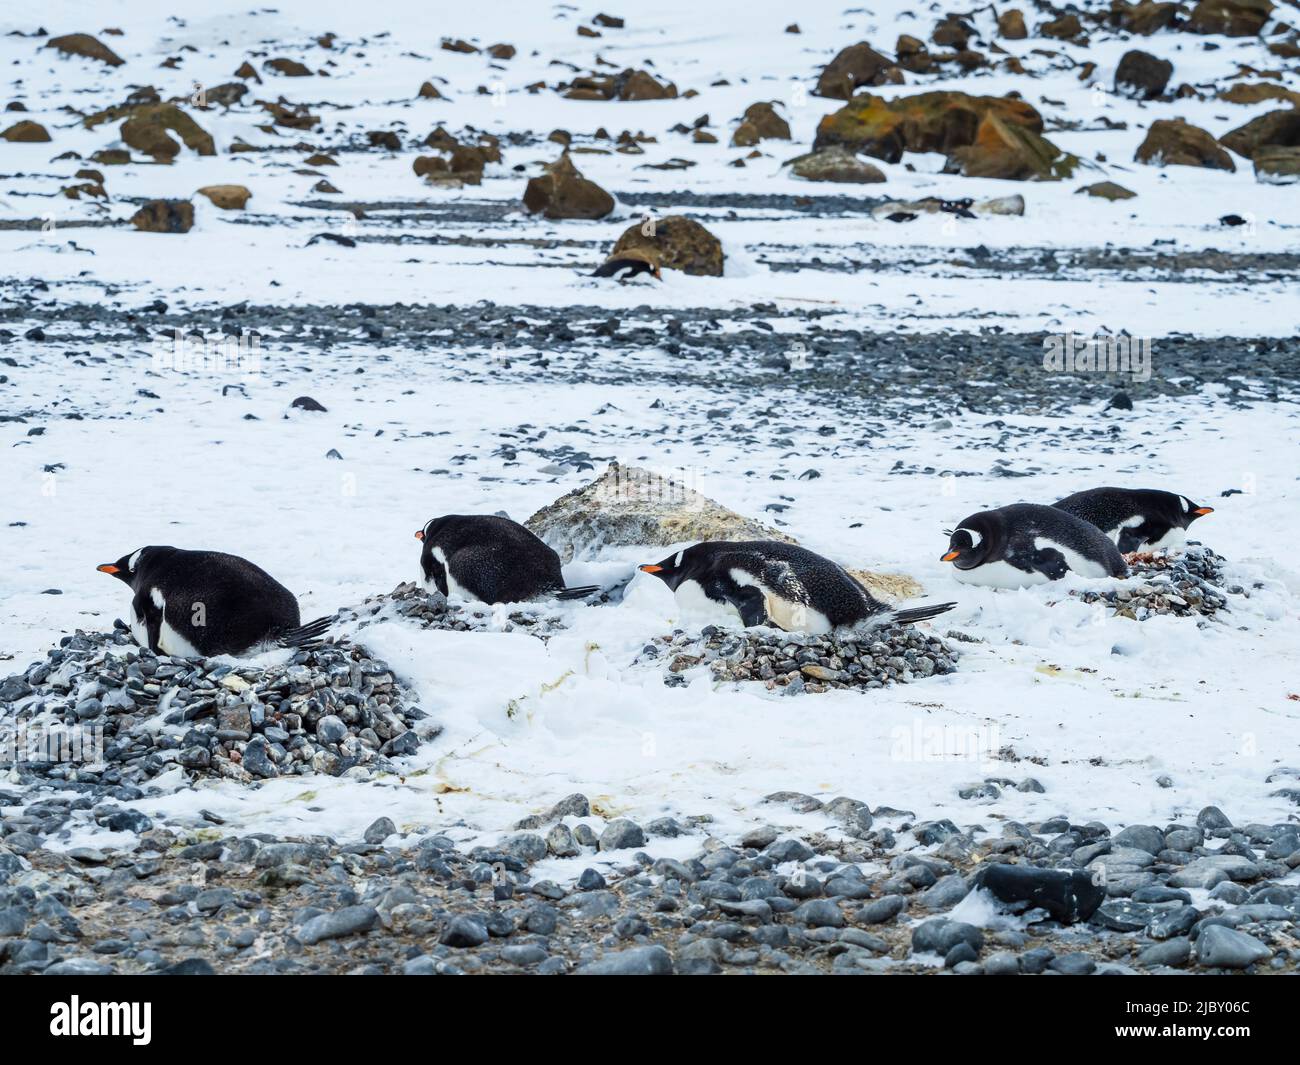 Nesting Gentoo Penguins (Pygoscelis papua) at Brown Bluff, Antarctic Peninsula Stock Photo